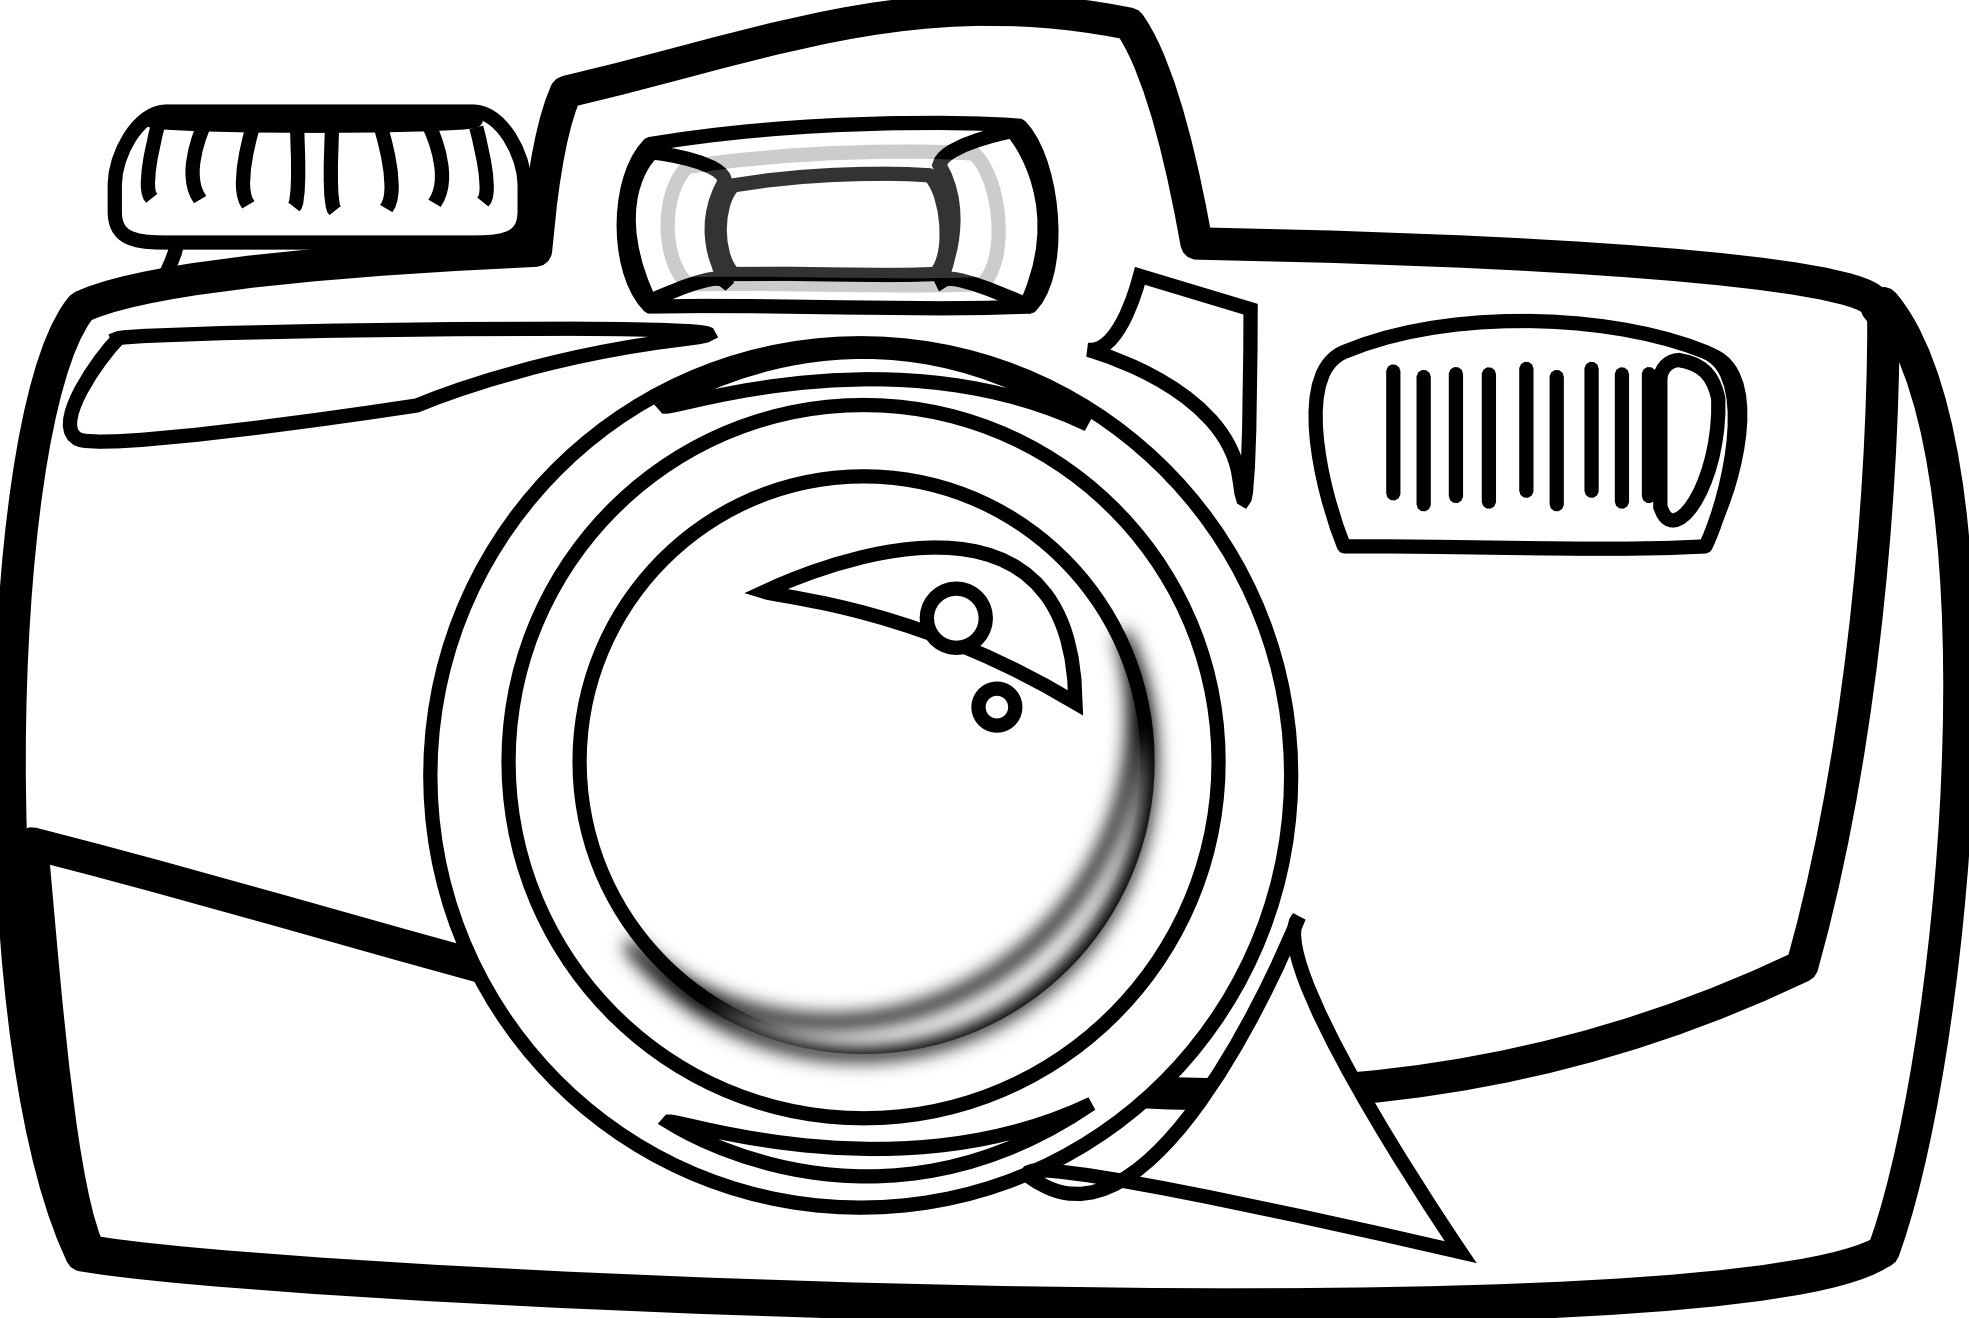 clip art camera outline - photo #38